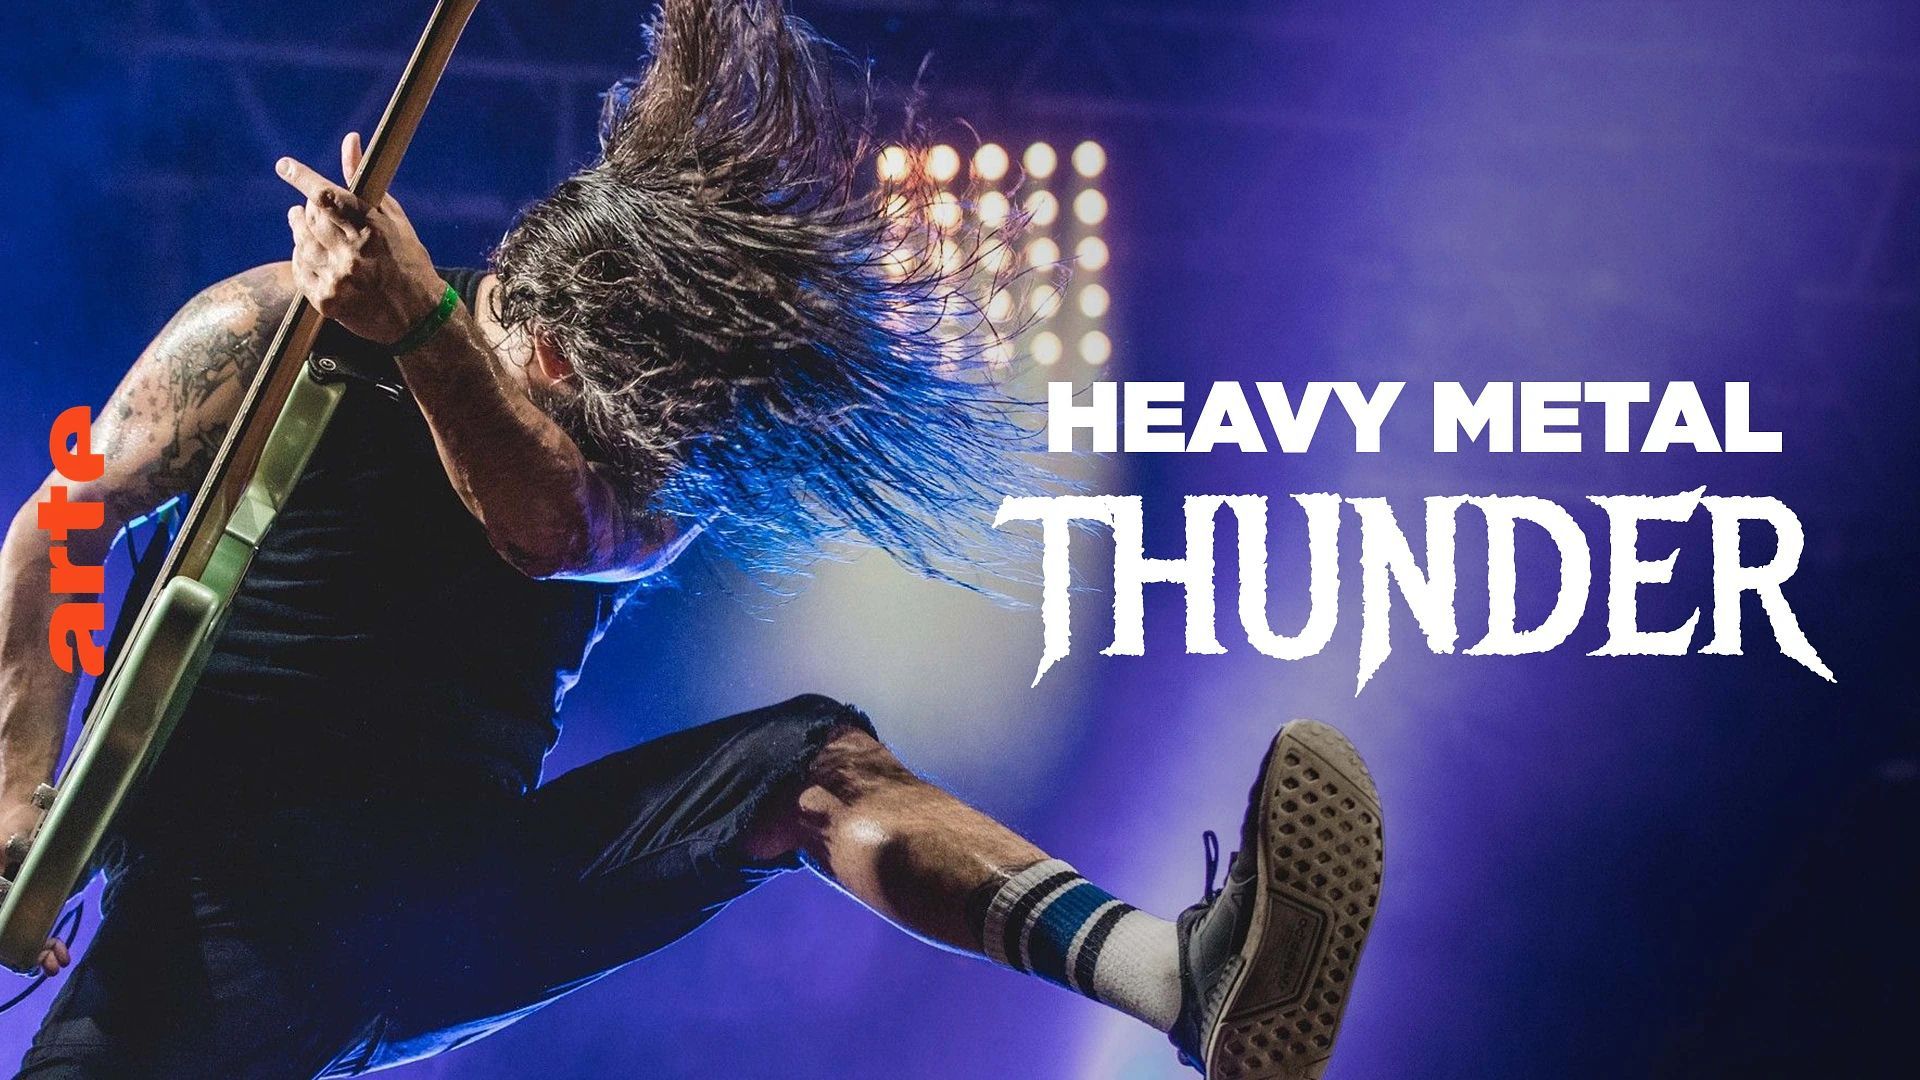 Arte Concert - "Heavy Metal Thunder"